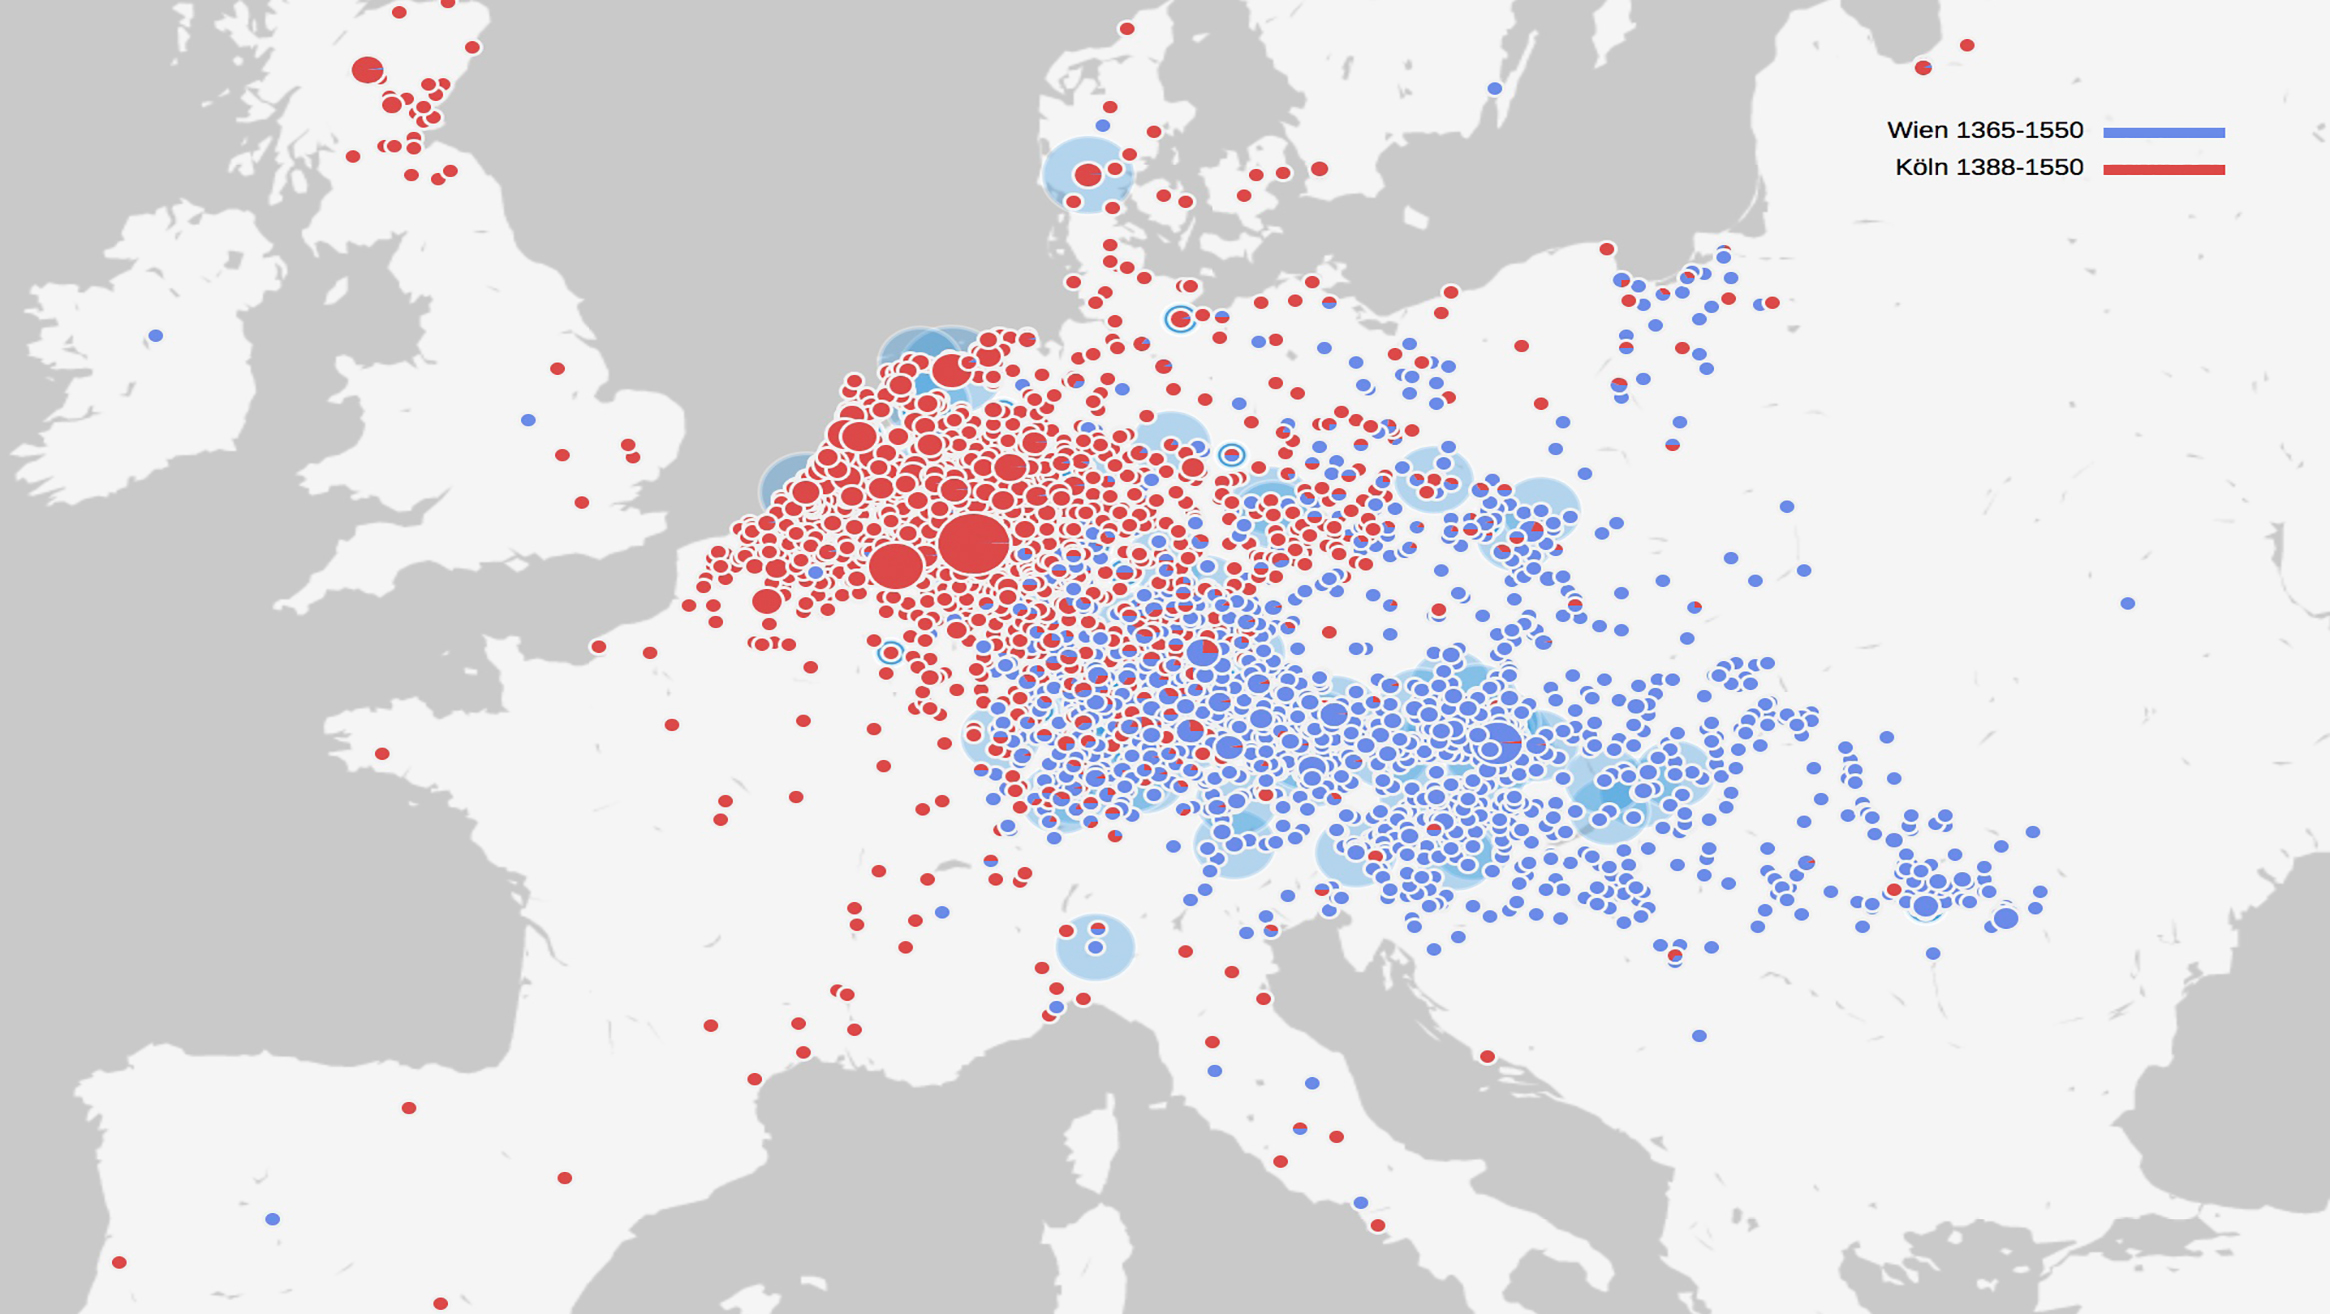 Herkunfts- und Kommunikationsräume von Gelehrten der Universitäten Köln (rot) und Wien (blau) um ca. 1550 im Vergleich.